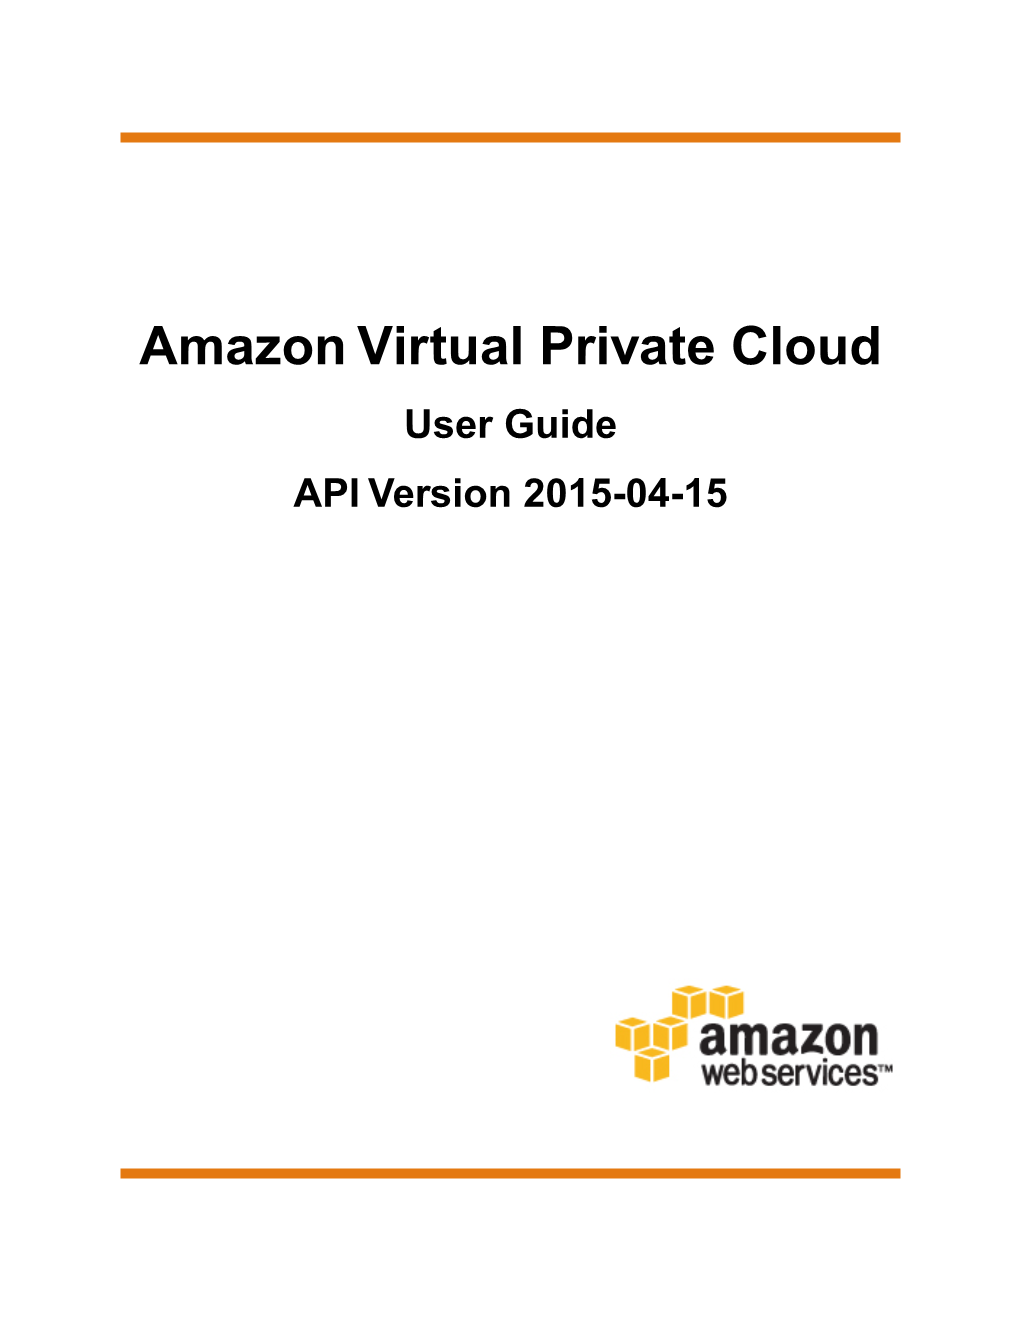 Amazon Virtual Private Cloud User Guide API Version 2015-04-15 Amazon Virtual Private Cloud User Guide